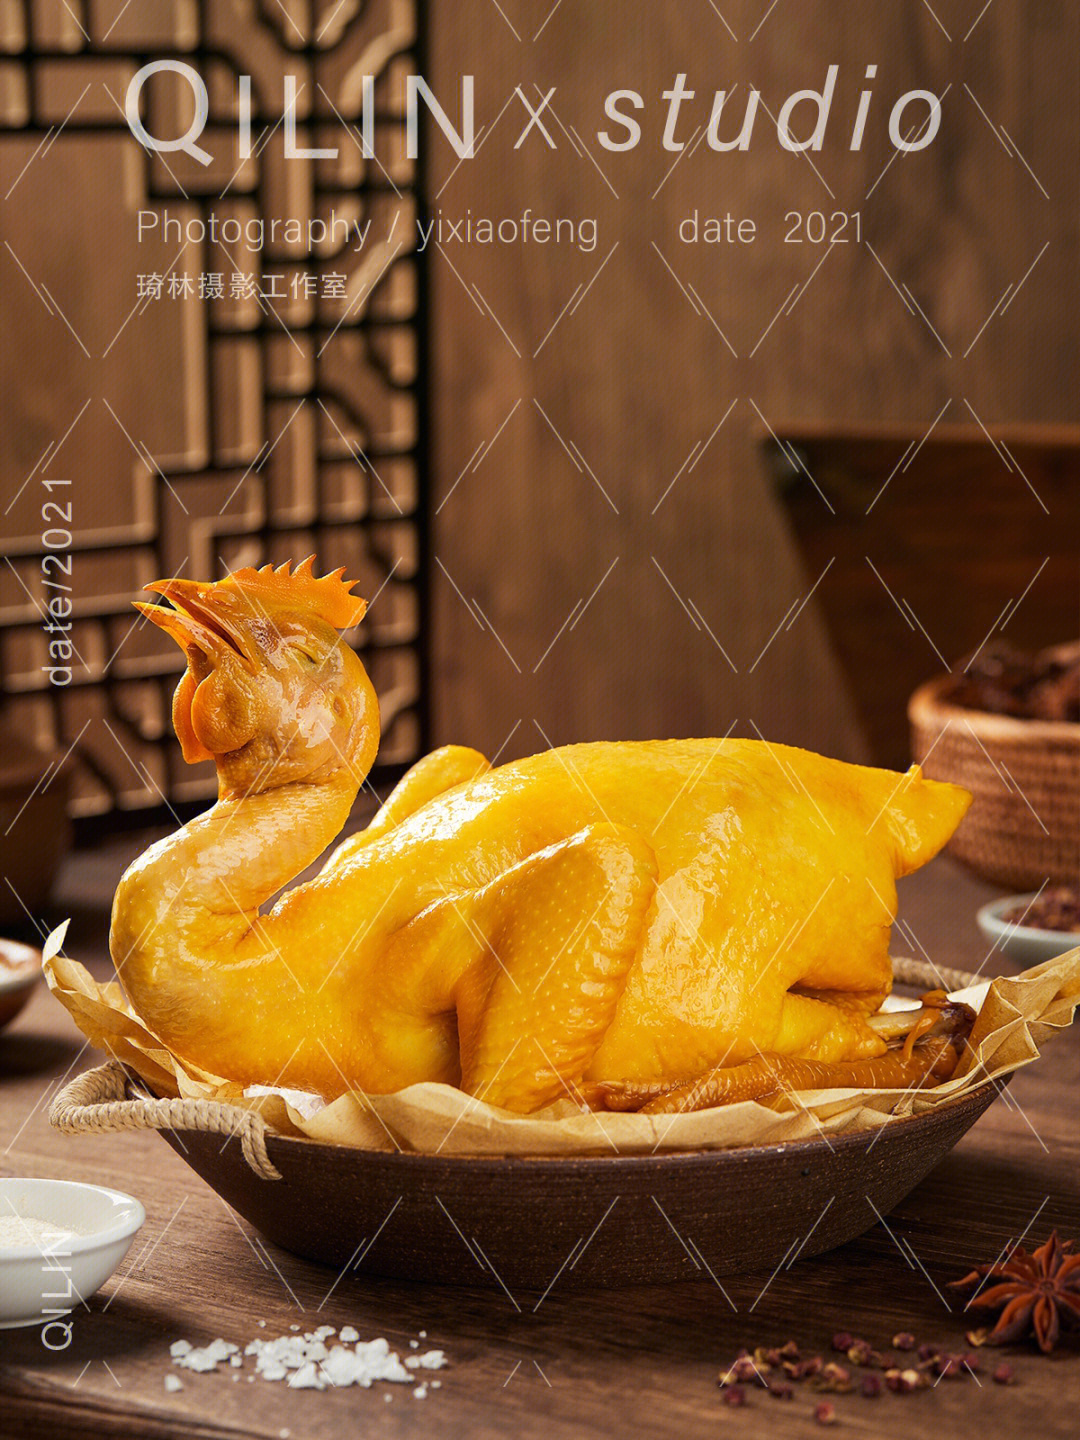 传统客家美食盐焗鸡拍摄用光分享